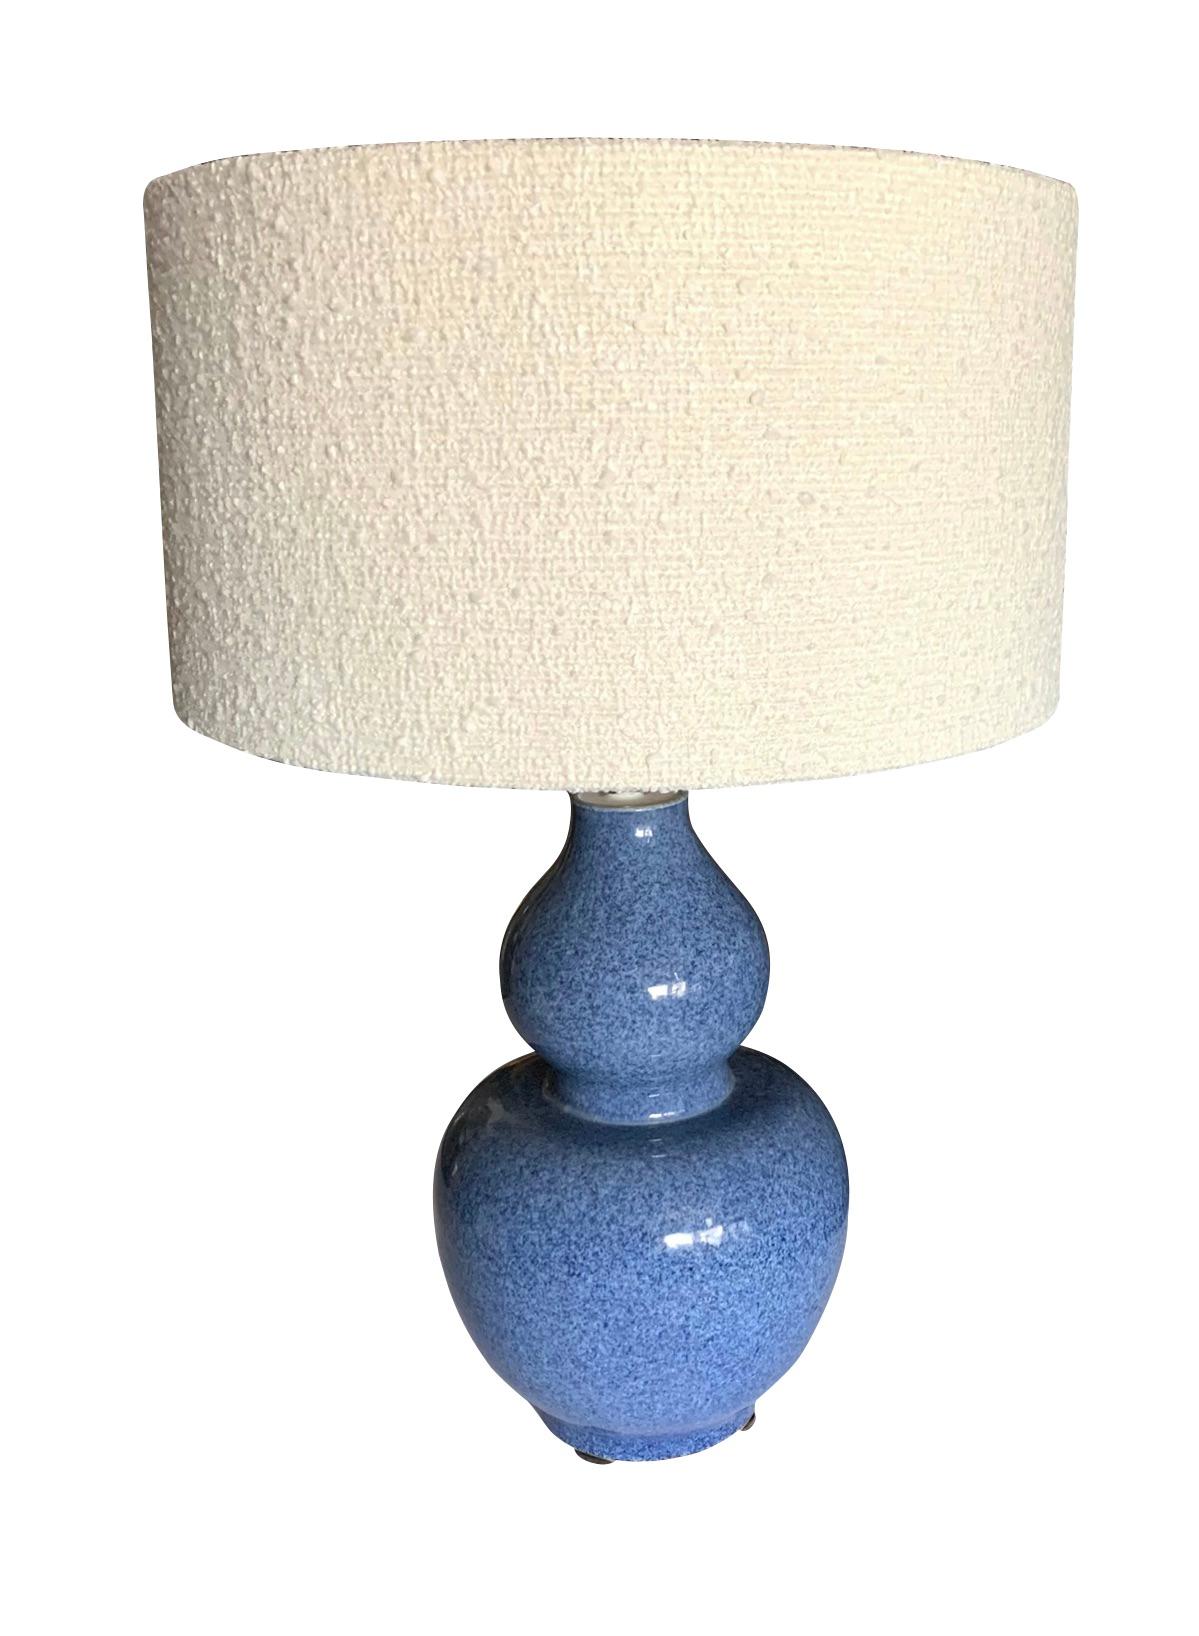 Paire de lampes contemporaines chinoises en forme de gourde et de vase en céramique à glaçure bleue mouchetée.
Abat-jour en tissu blanc inclus.
La base mesure 8,5